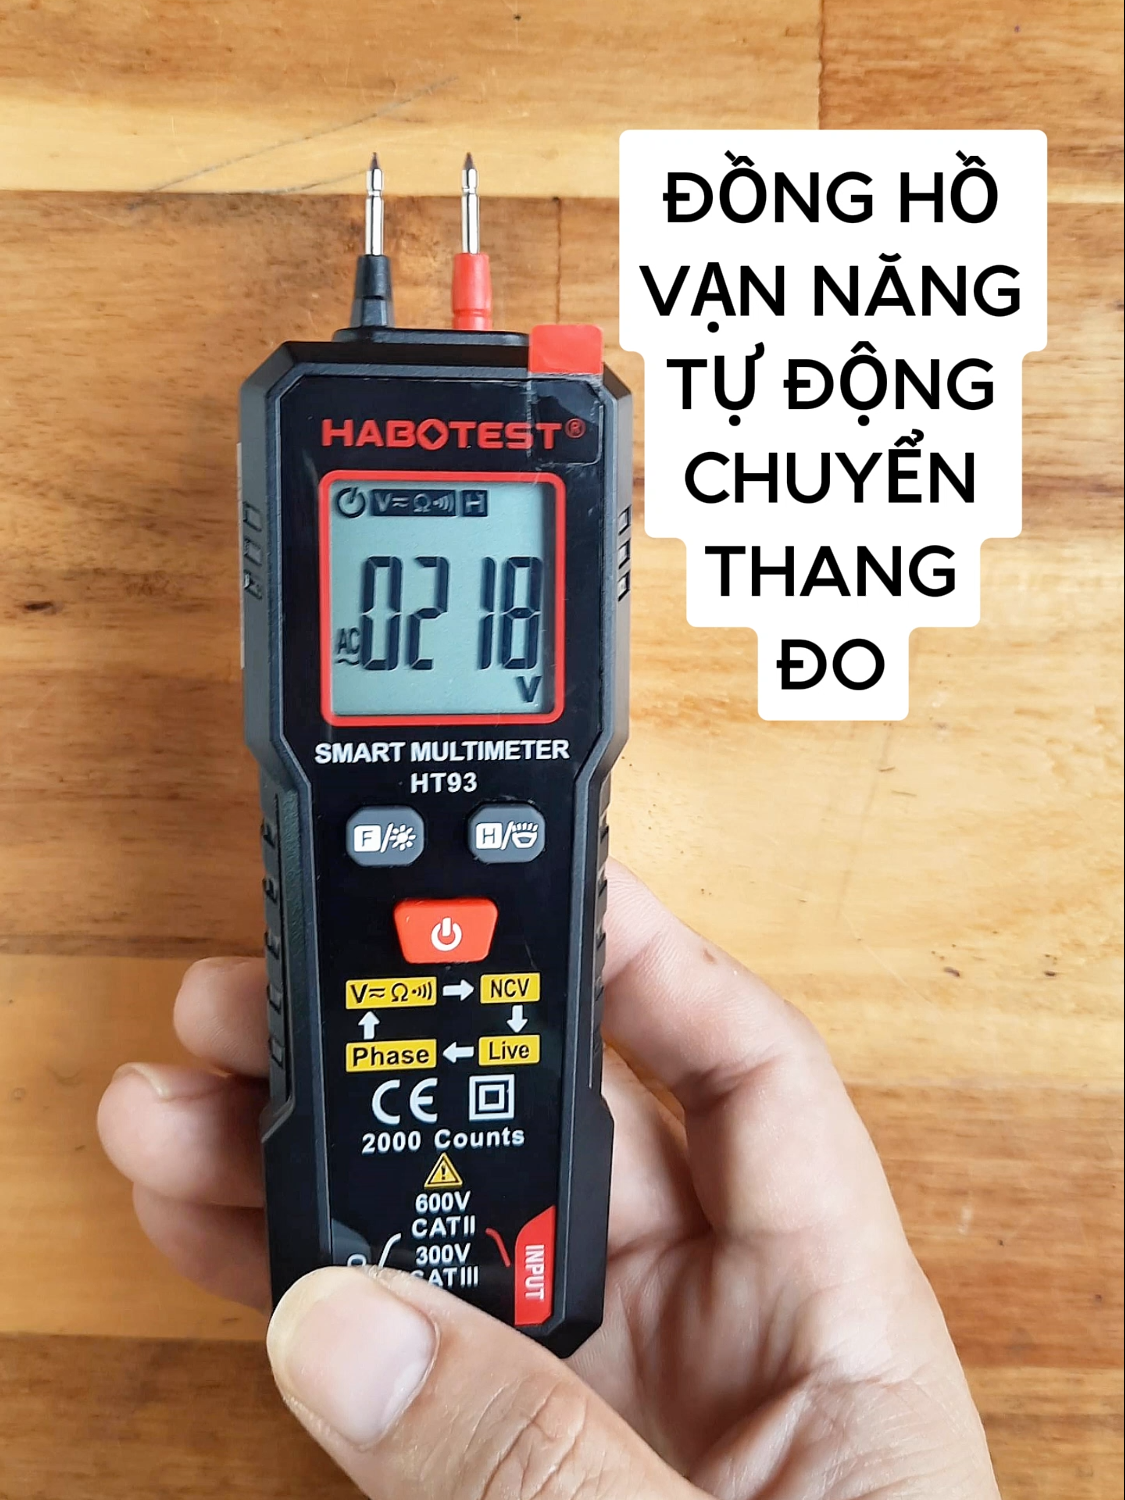 Đồng hồ vạn năng thông minh Habotest HT93 tự động chuyển thang đo không sợ đo nhầm #ht93auto #habotestht93 #donghovannang #đồng hồ đo điện #sondodien